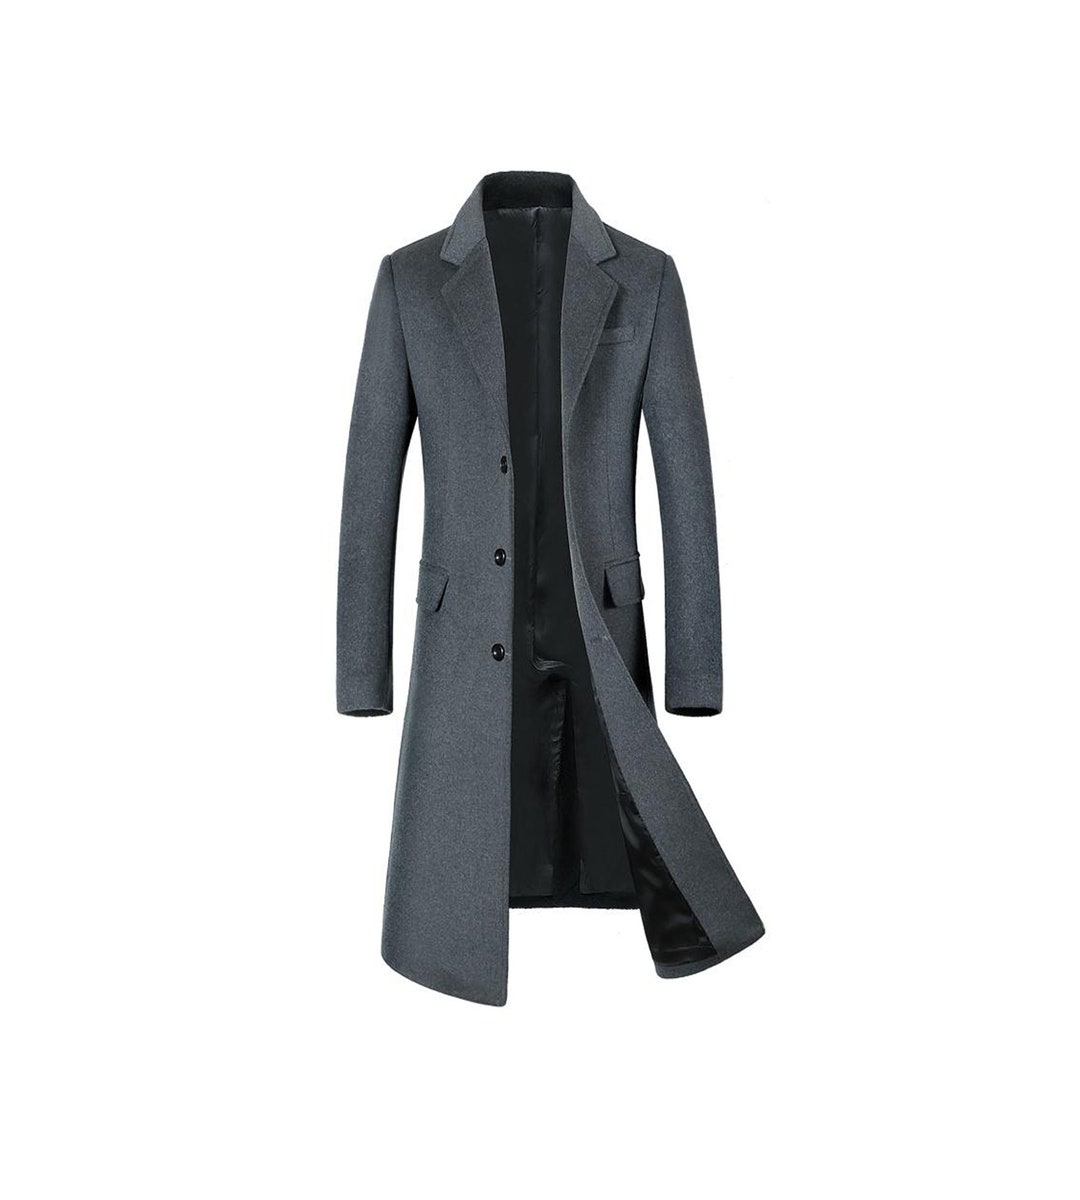 Mens Gray Long Overcoat Vintage Long Trench Coat for Men Mens Business ...